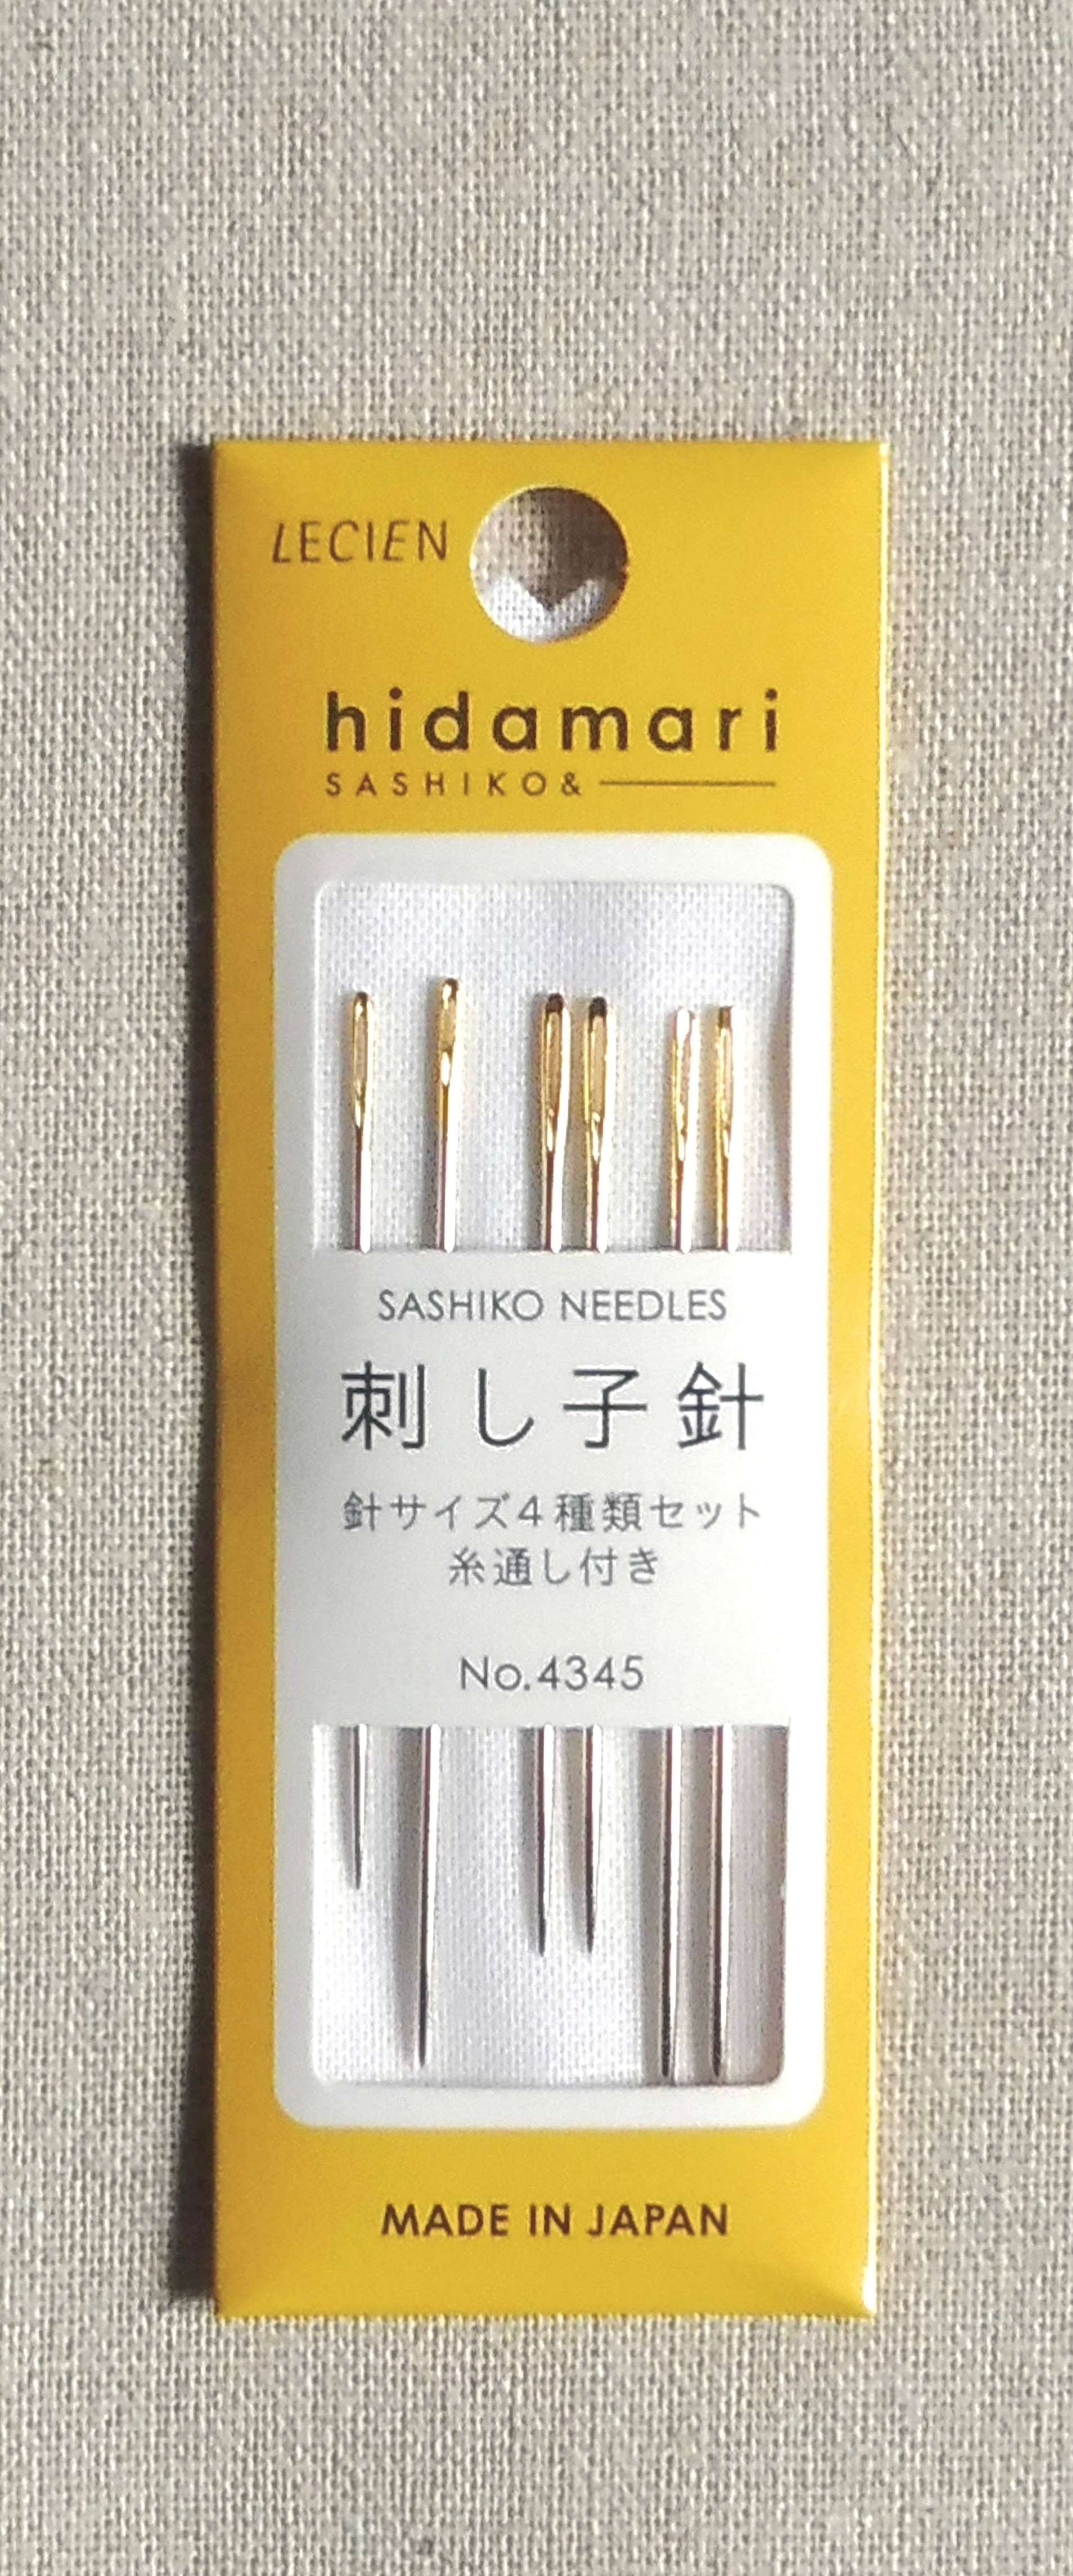 Sashiko needles